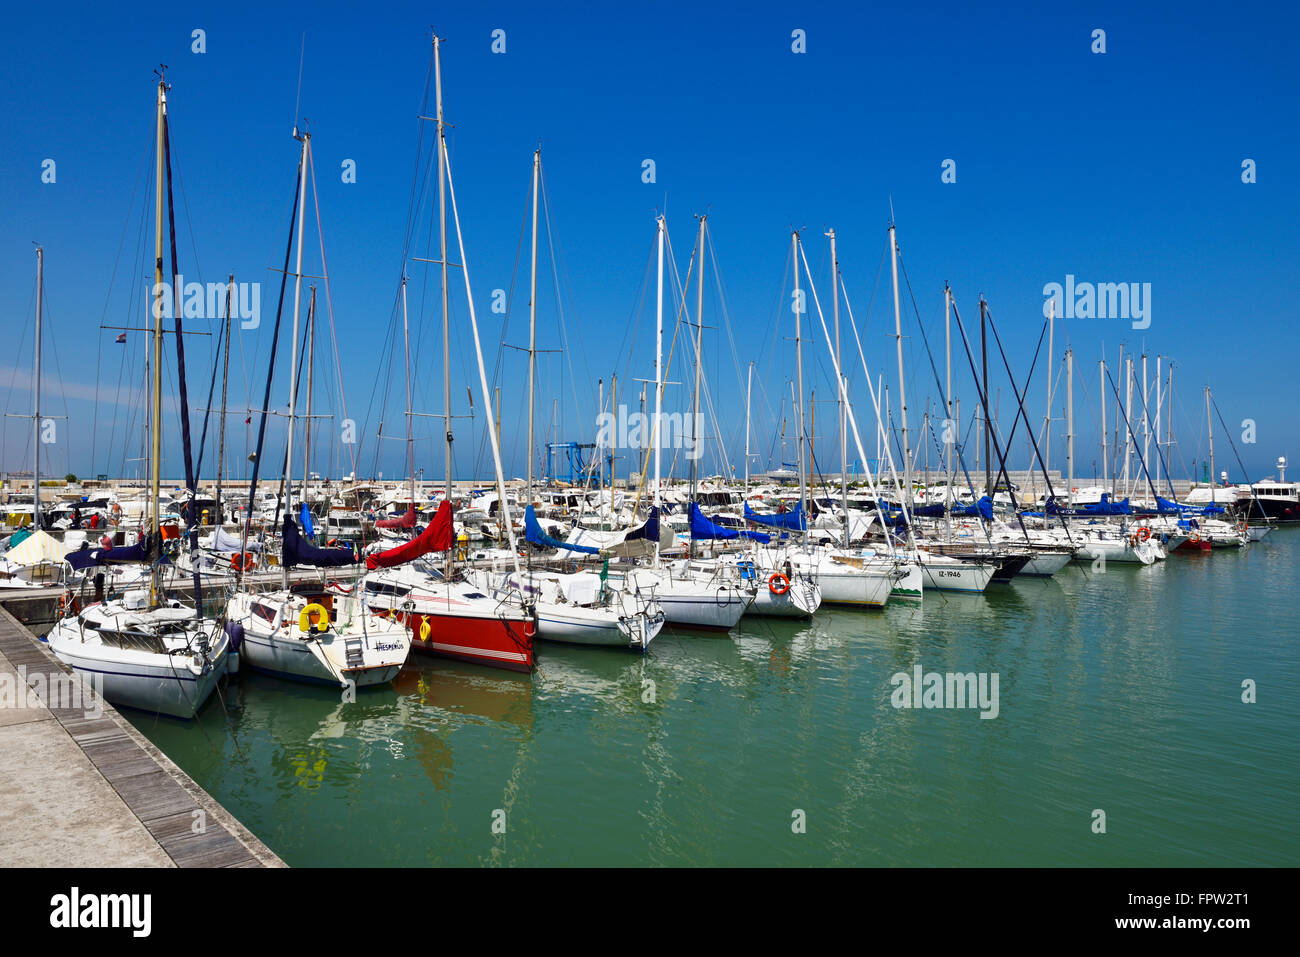 Barche a vela nel porto, Senigallia, provincia di Ancona, Marche, Italia Foto Stock